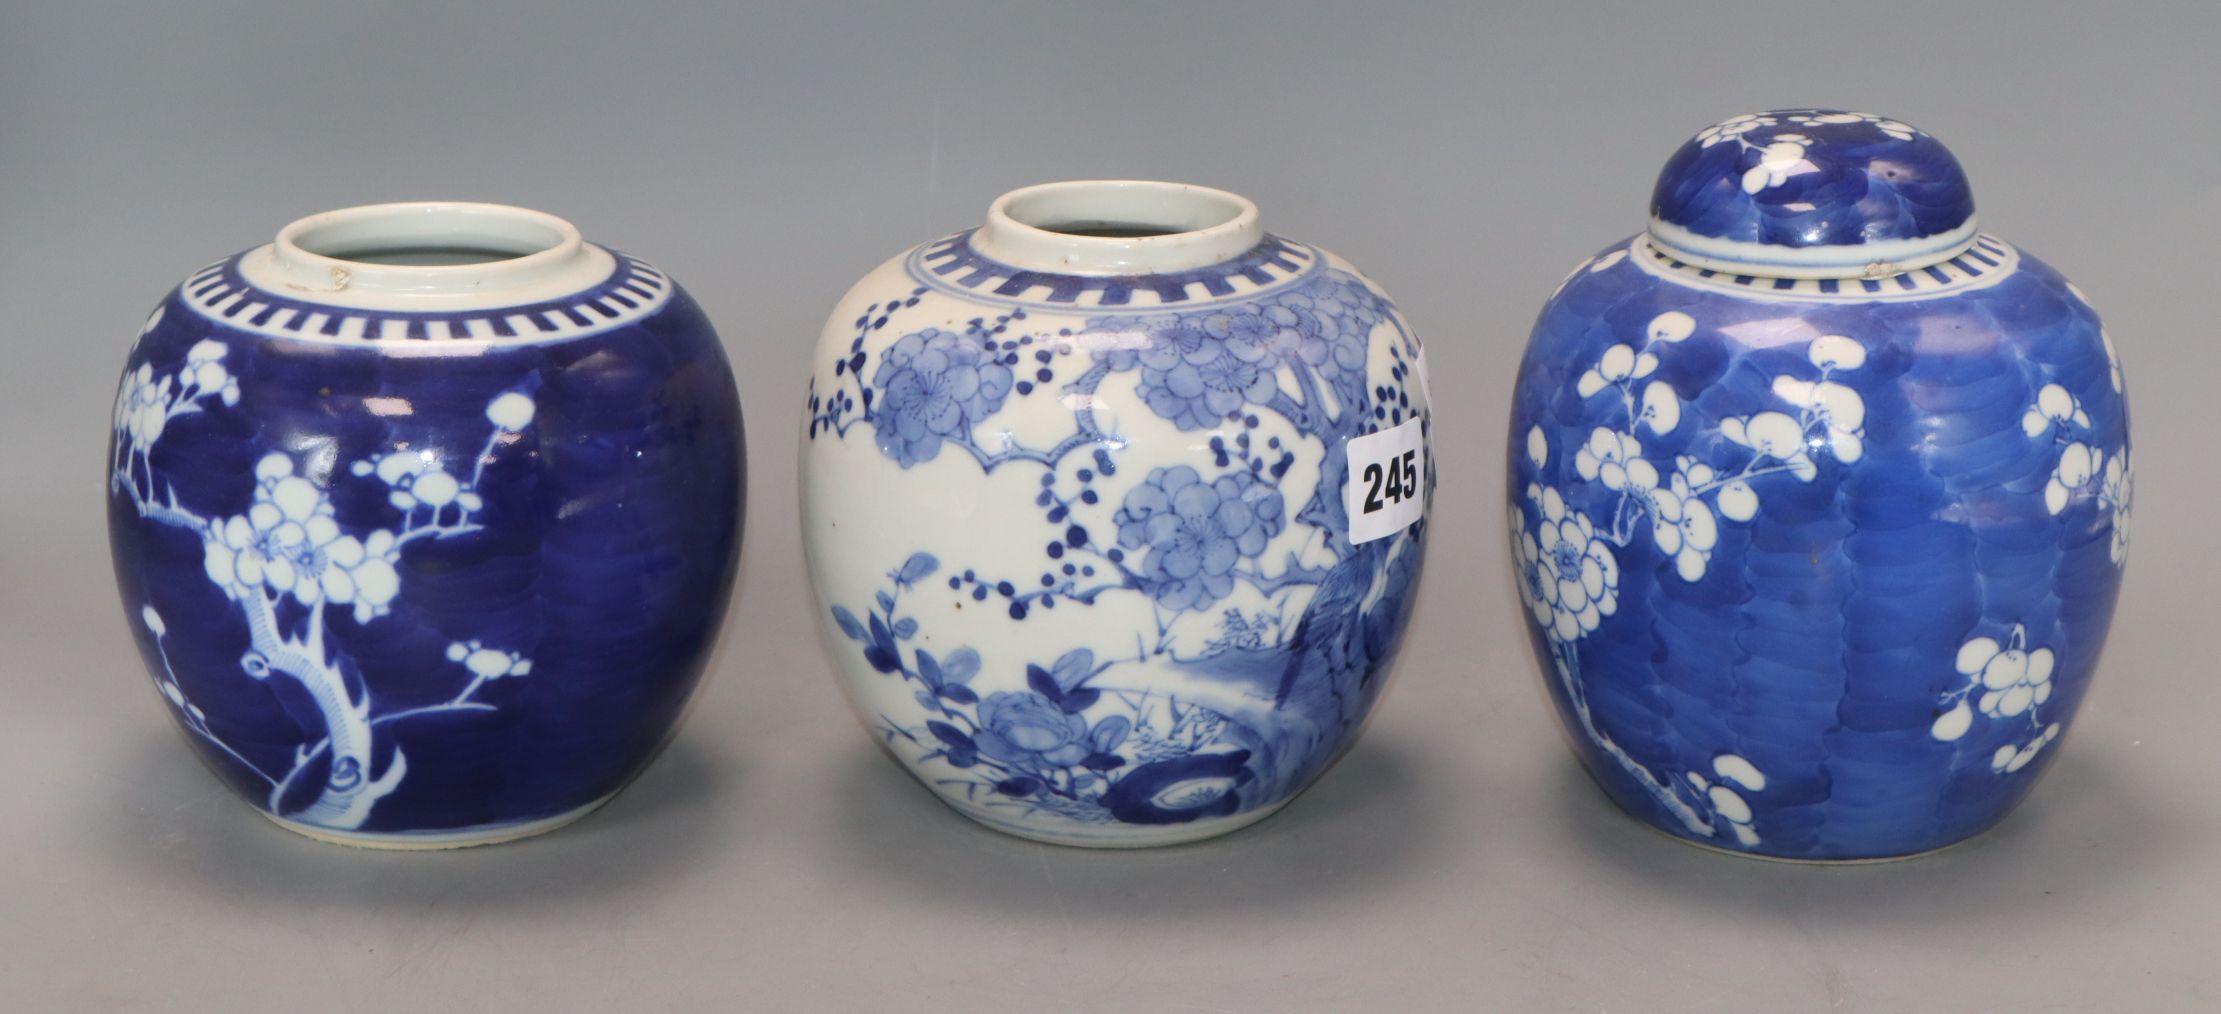 Three 19th century Chinese blue and white jars